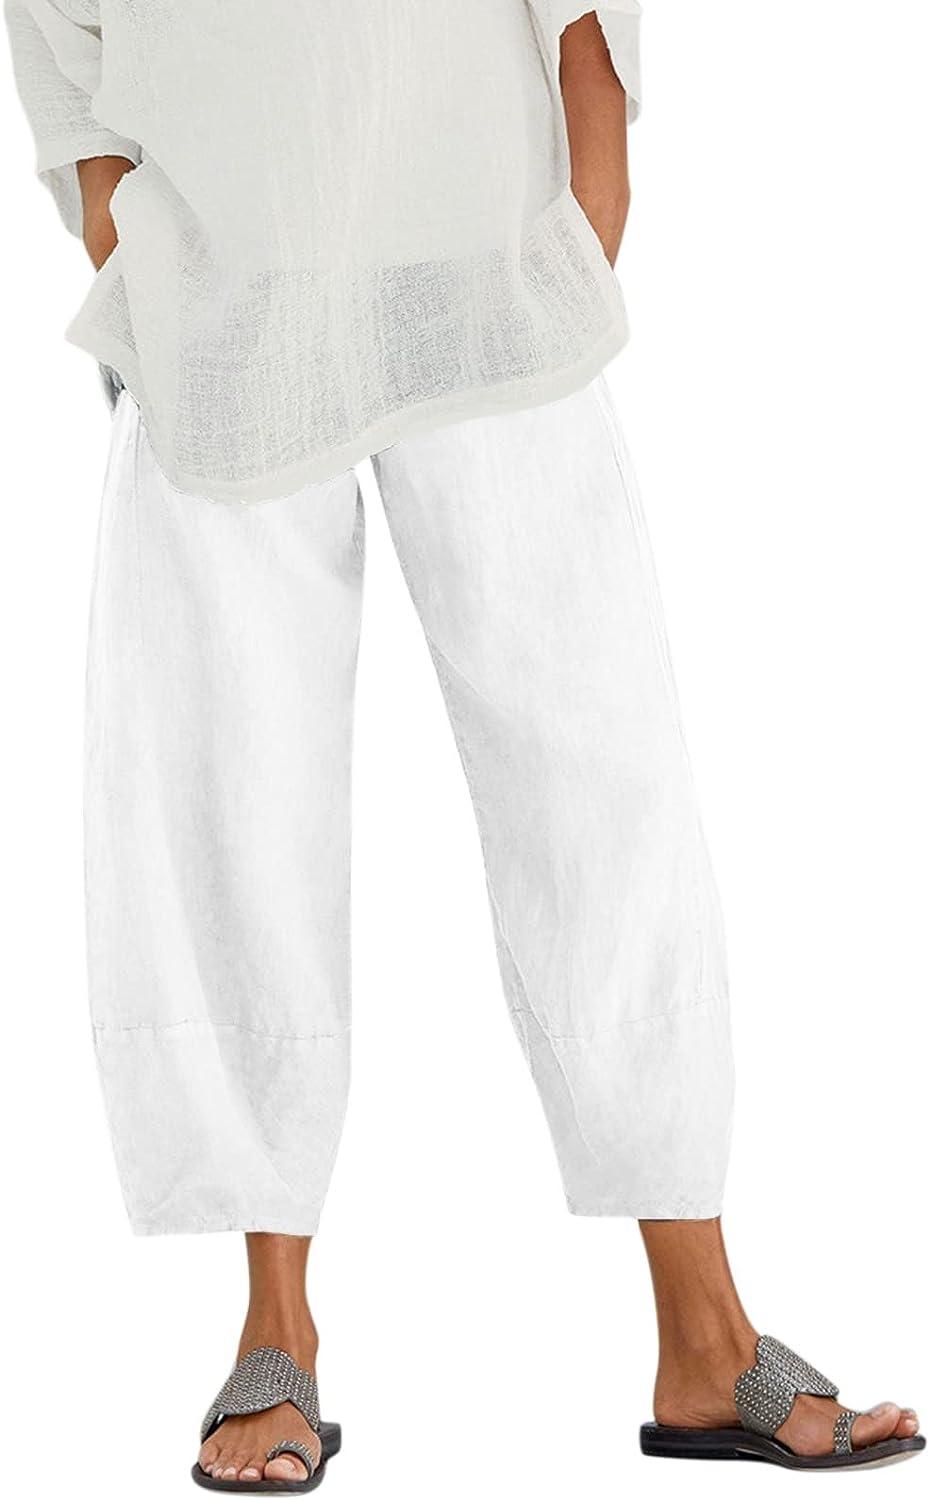 QWENTMTNTY Plus Size Capris Pants for Women Cotton Linen Wide Leg